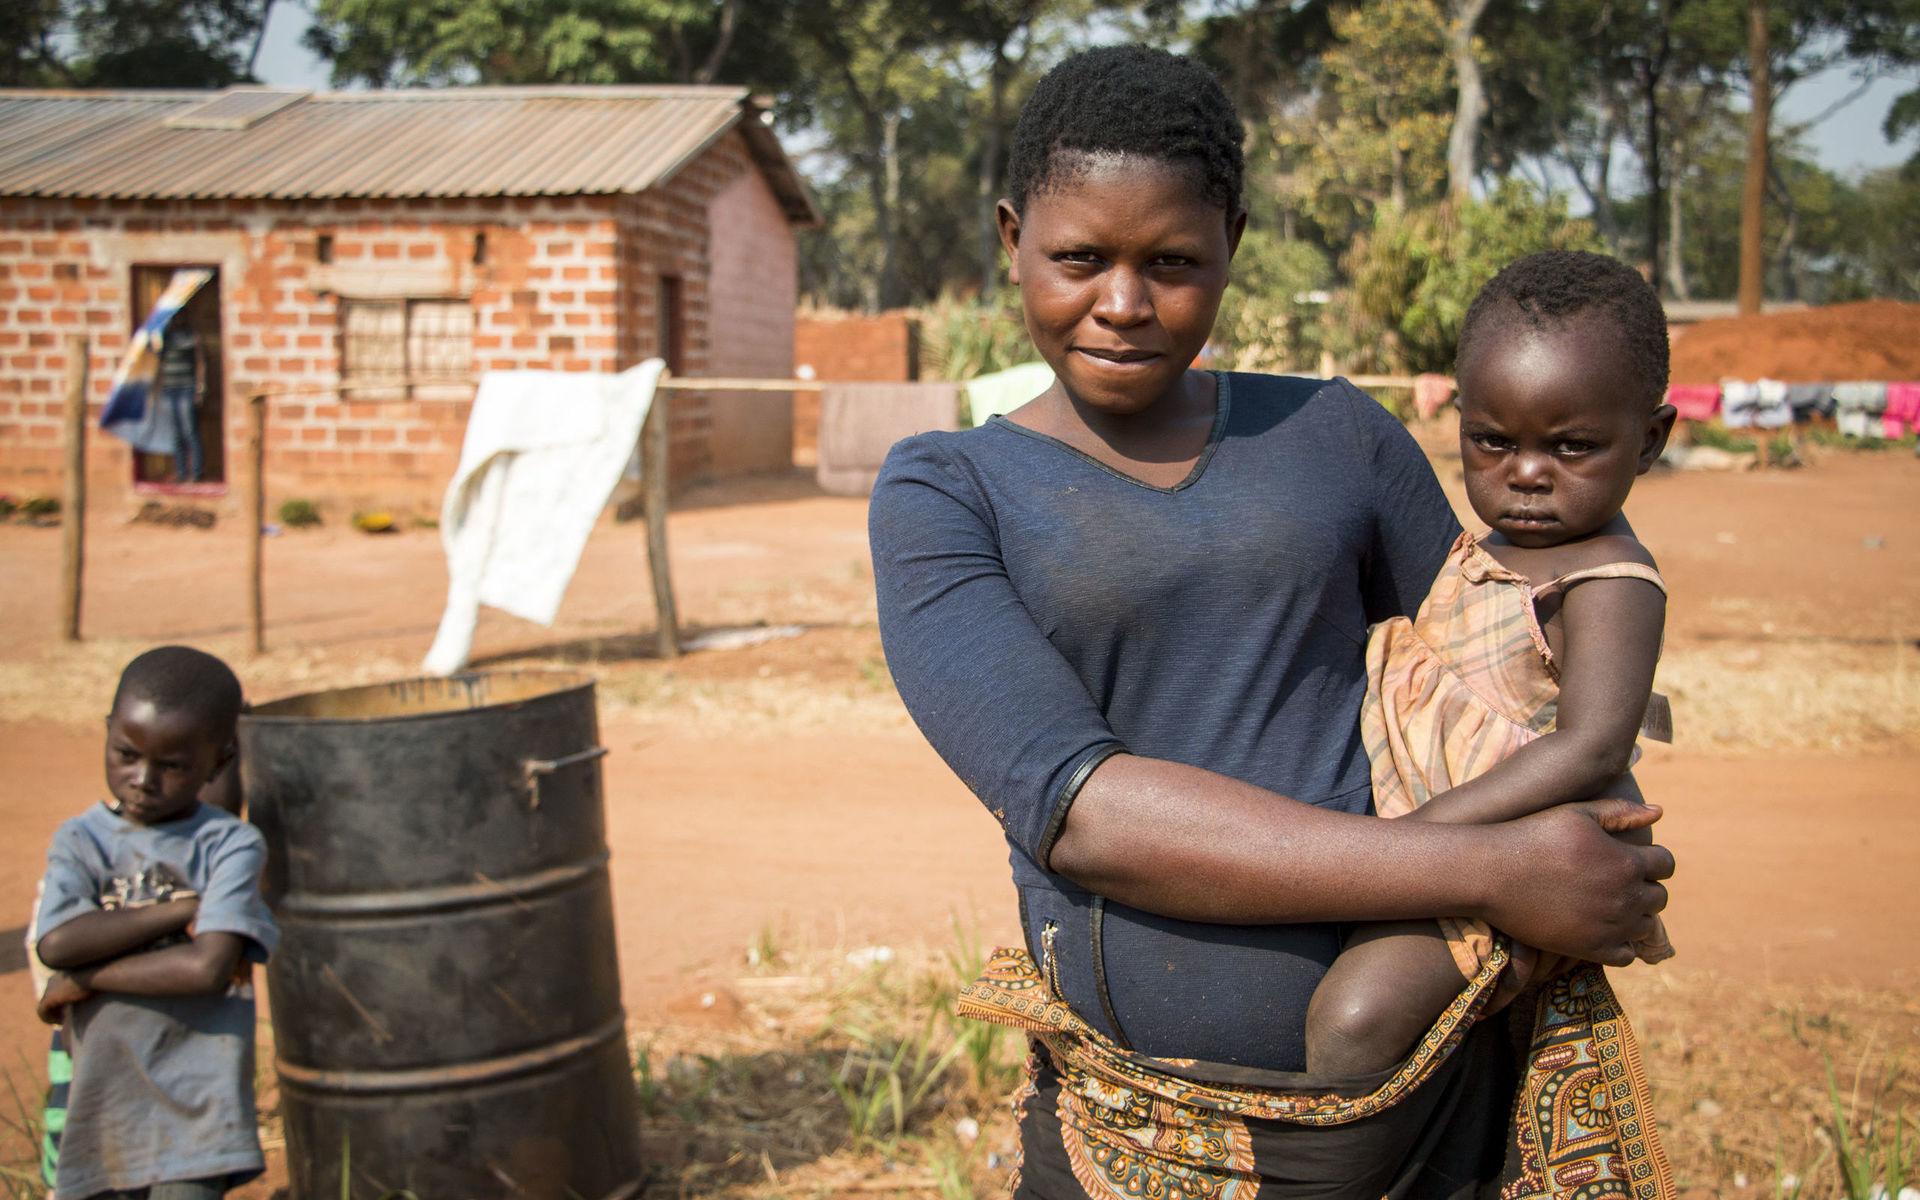 Elesy Kakwema med sin treåriga dotter. Själv slutade hon skolan i sjuan eftersom familjen inte hade råd att låta alla barn gå samtidigt. Men nu har hon börjat igen. Hon drömmer om utbildning och jobb i gruvan.